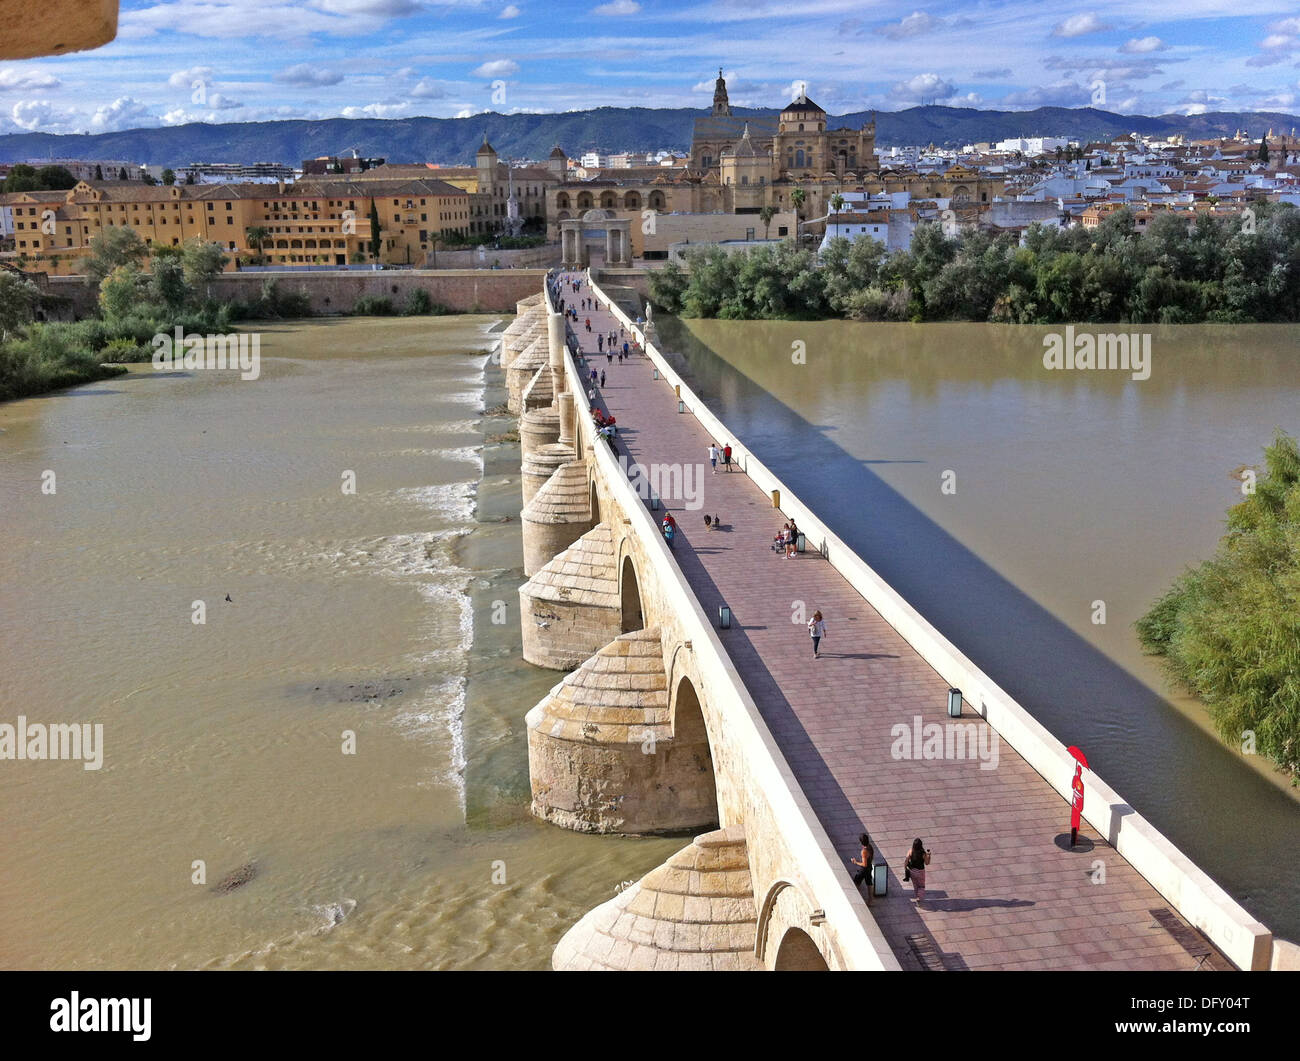 Córdoba, Andalusien, Spanien. Römische Brücke führt über den Guadalquivier-Fluss in Richtung der Kathedrale. Foto Tony Gale Stockfoto